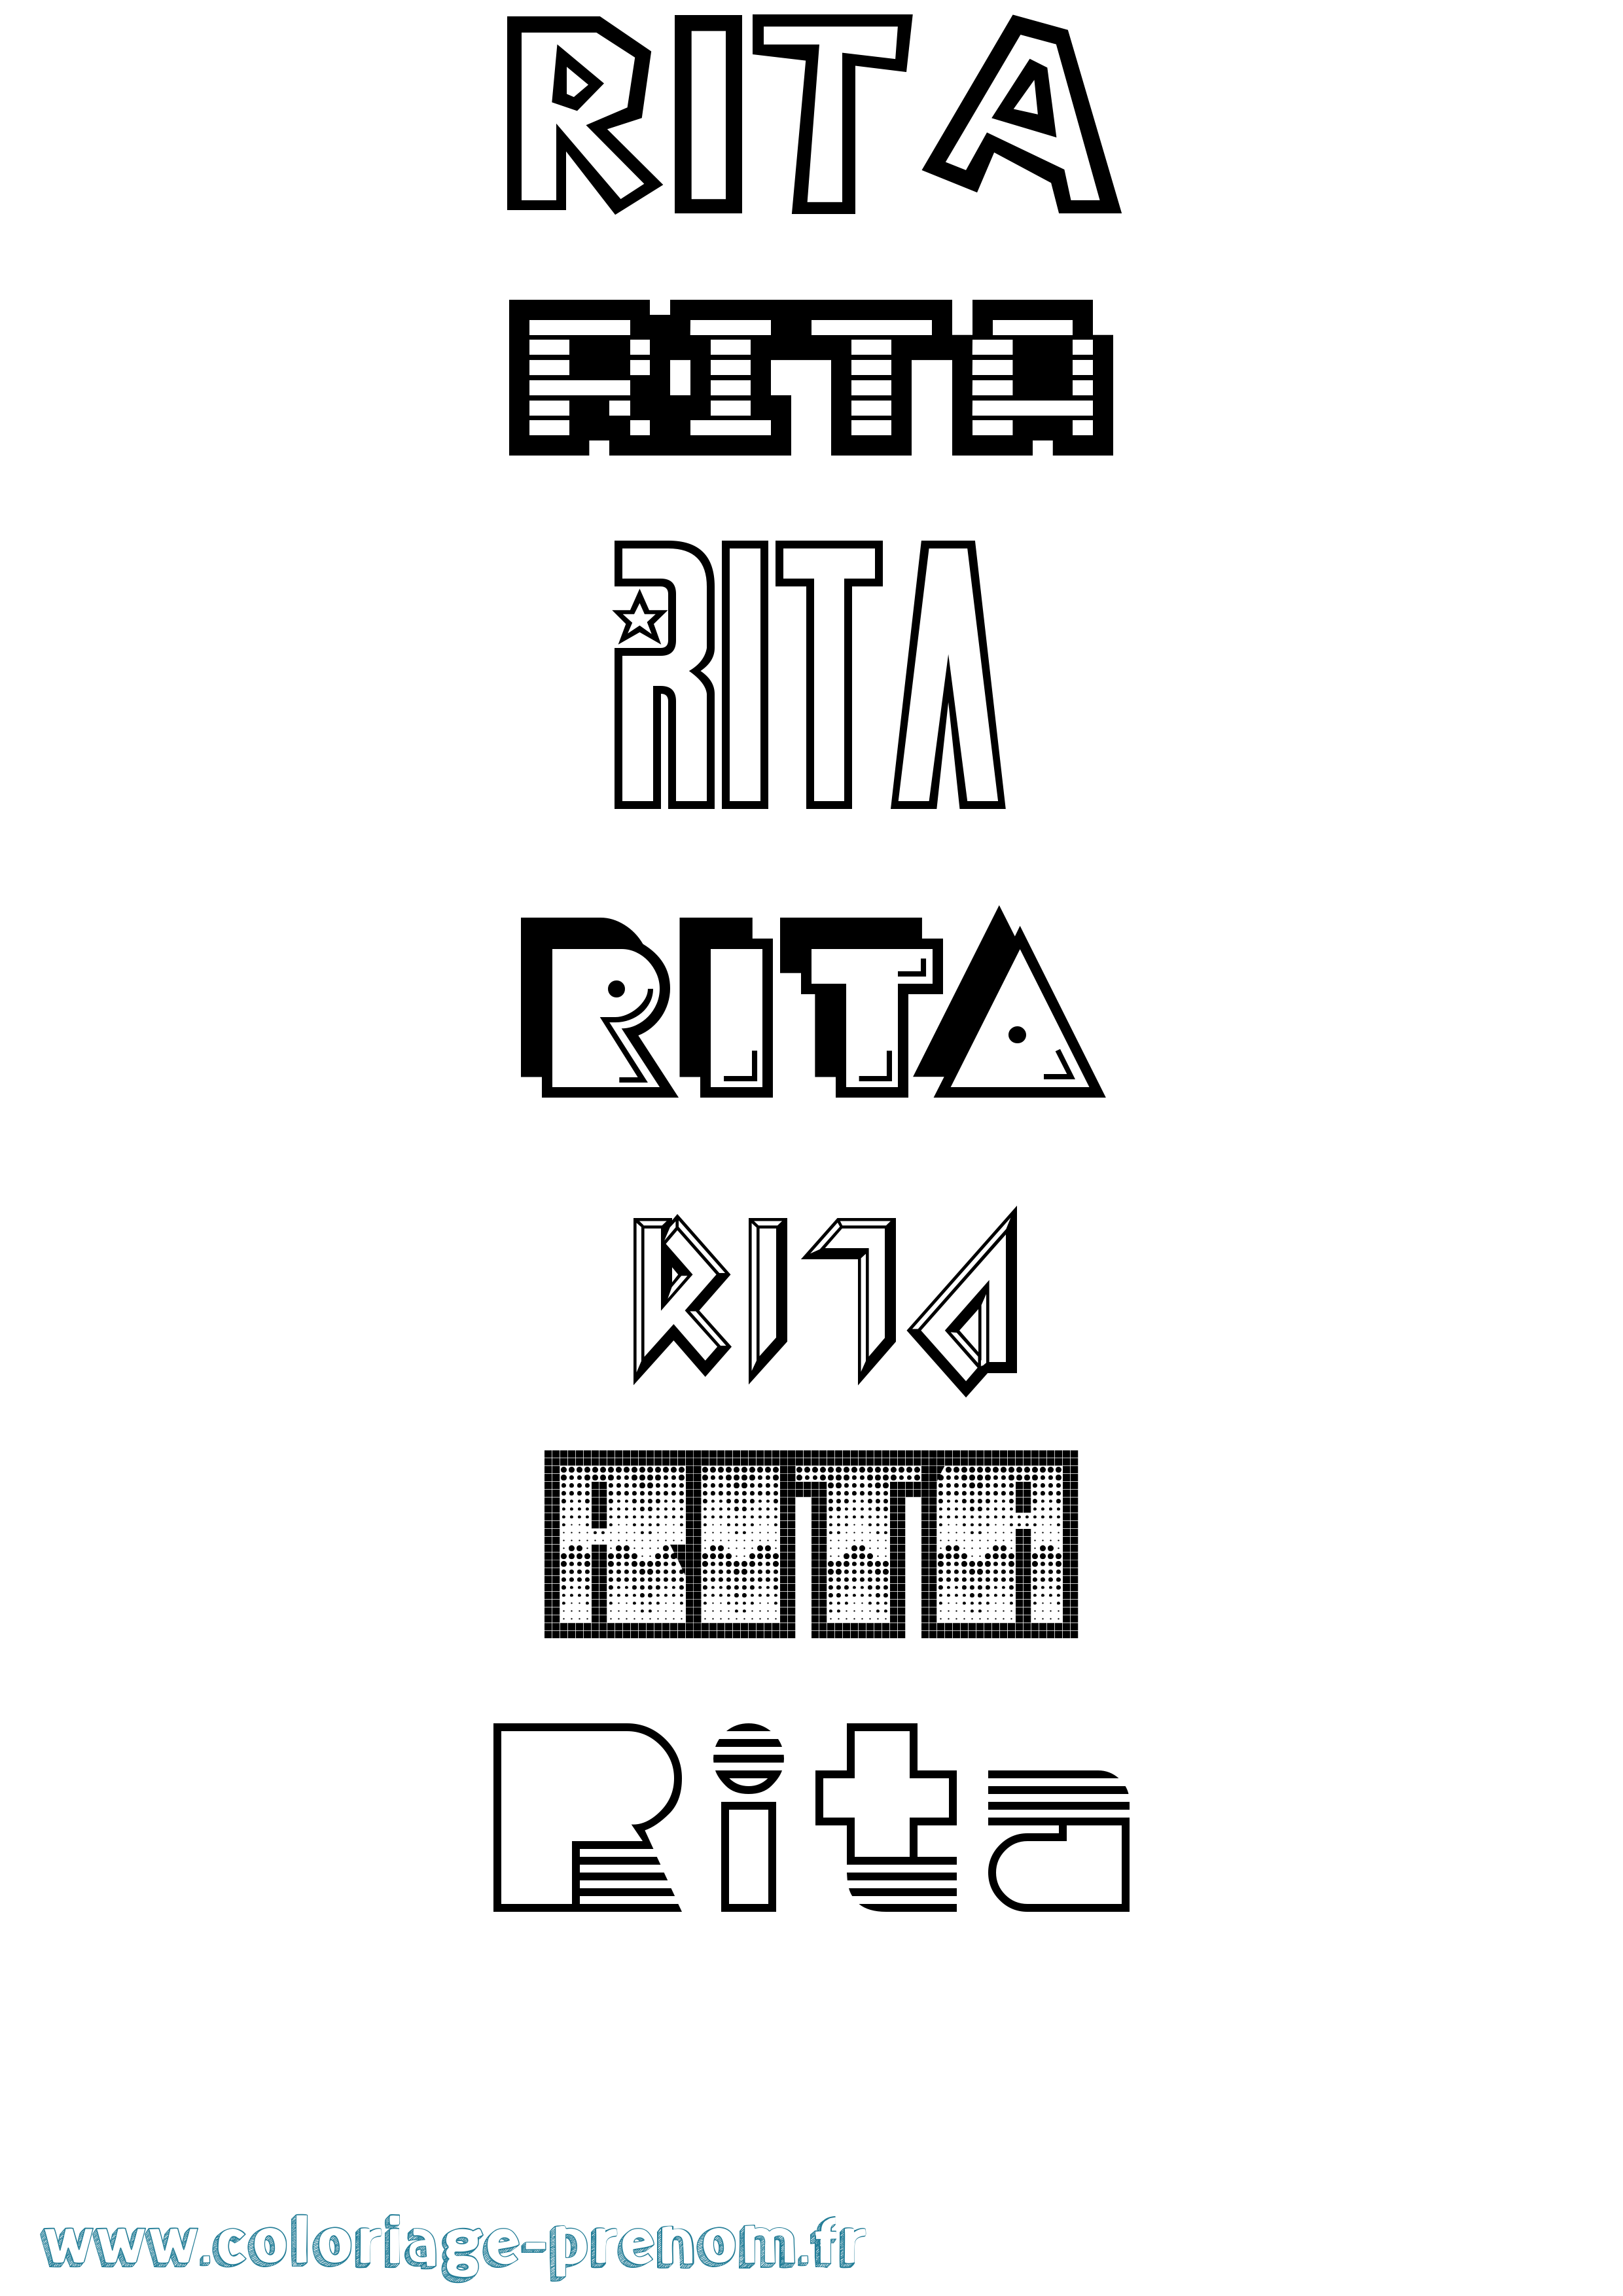 Coloriage prénom Rita Jeux Vidéos